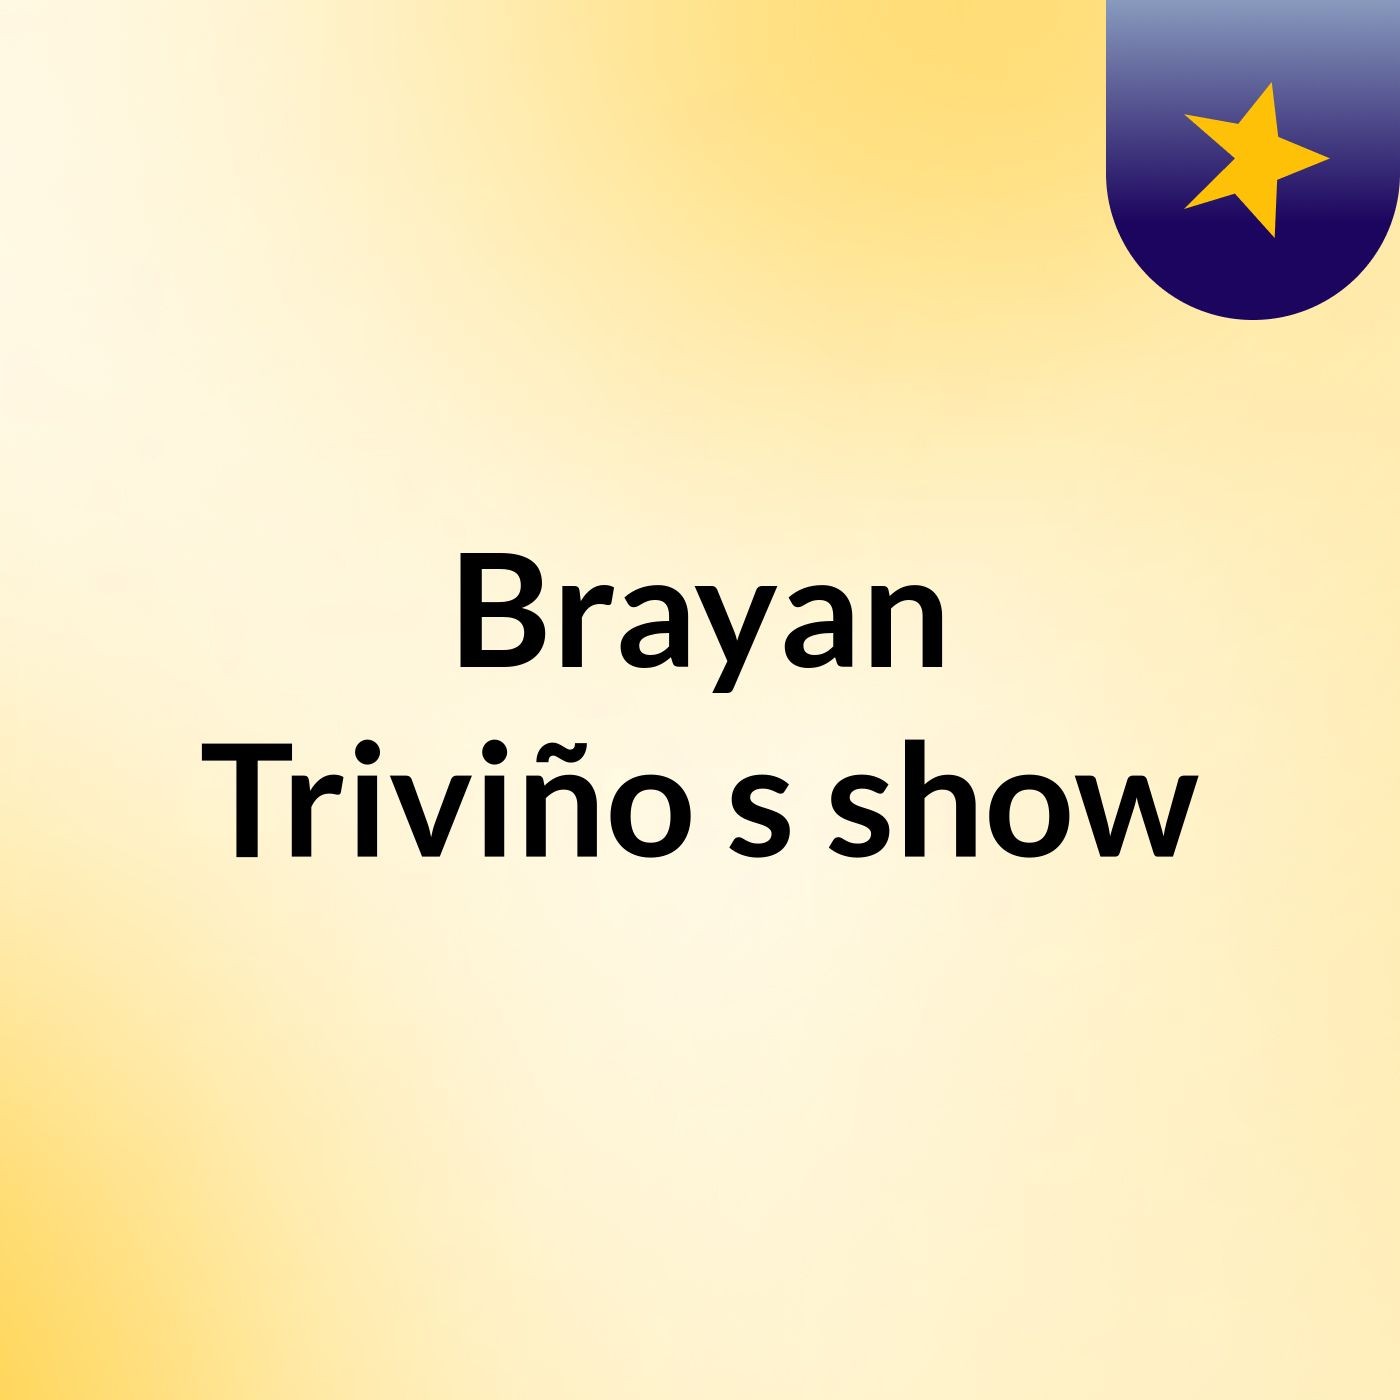 Brayan Triviño's show